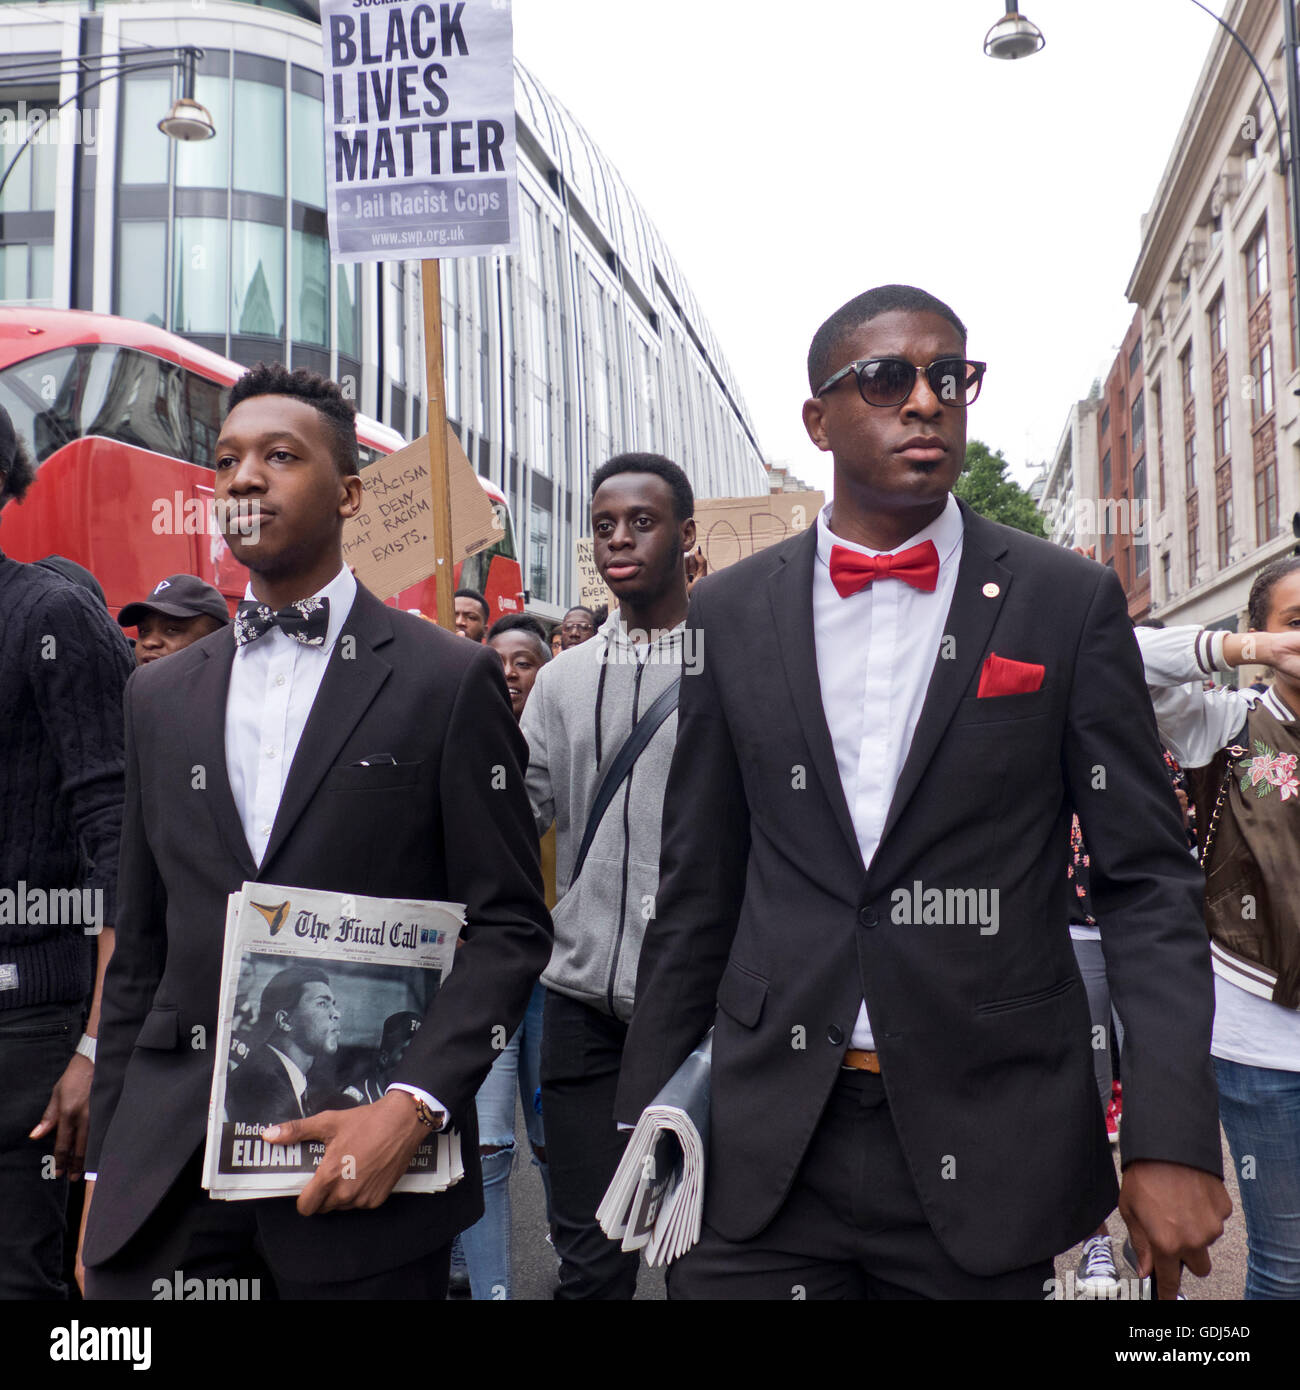 "Black vidas Asunto" más de un millar de personas salieron a las calles de Londres cantando "manos arriba no disparar". La comunidad negra estaba indignada por la brutalidad de la policía tras el asesinato de dos hombres negros - uno en Minnesota y uno en Louisiana. Foto de stock